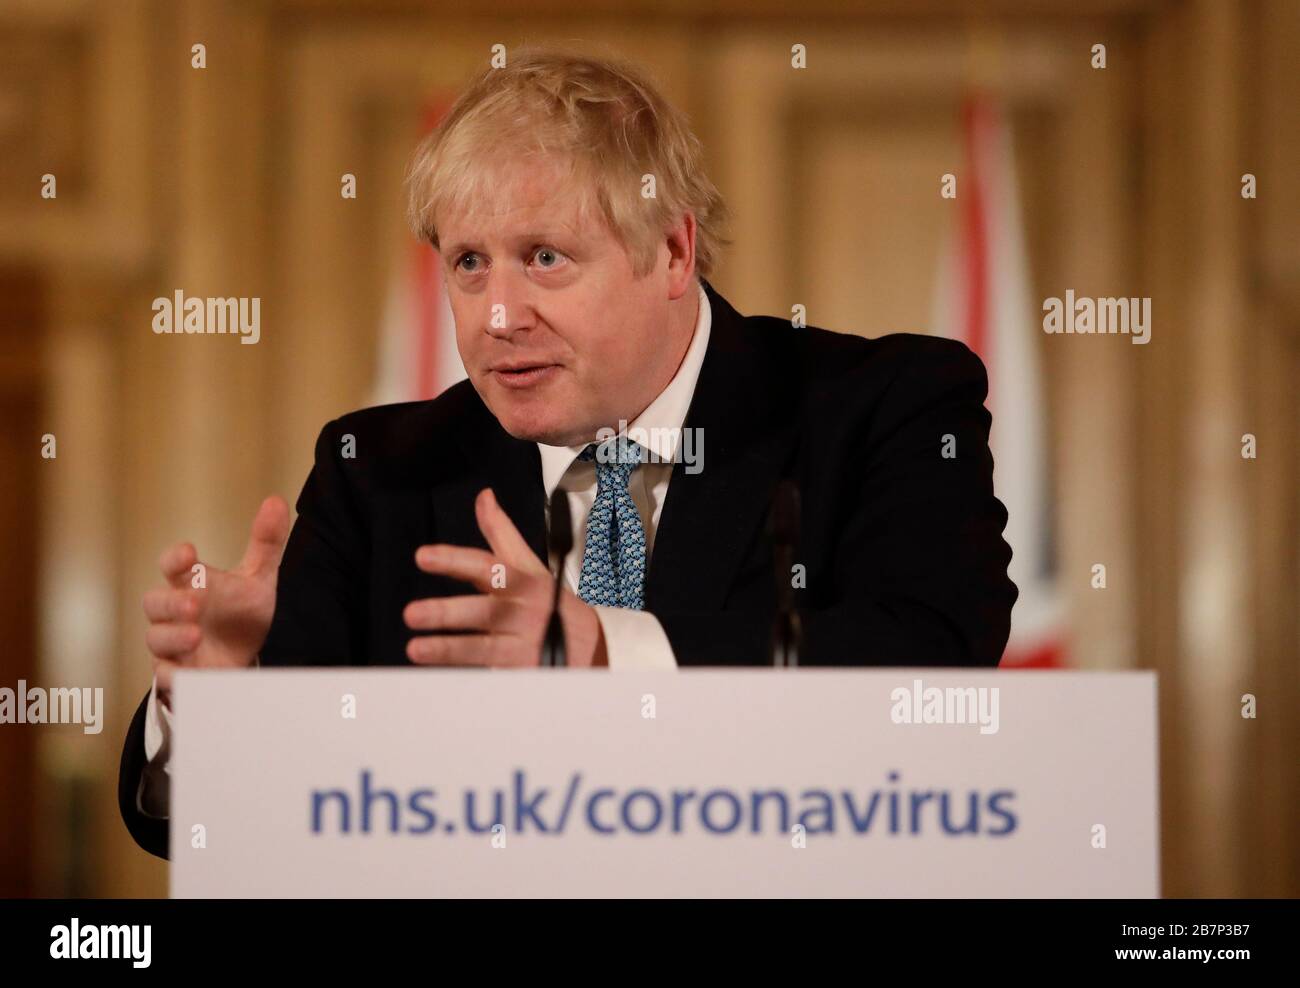 Le Premier ministre Boris Johnson a parlé à un exposé des médias à Downing Street, Londres, sur Coronavirus (COVID-19). Date de l'image: Mardi 17 mars 2020. Voir l'histoire de PA SANTÉ Coronavirus. Crédit photo devrait lire: Matt Dunham/PA fil Banque D'Images